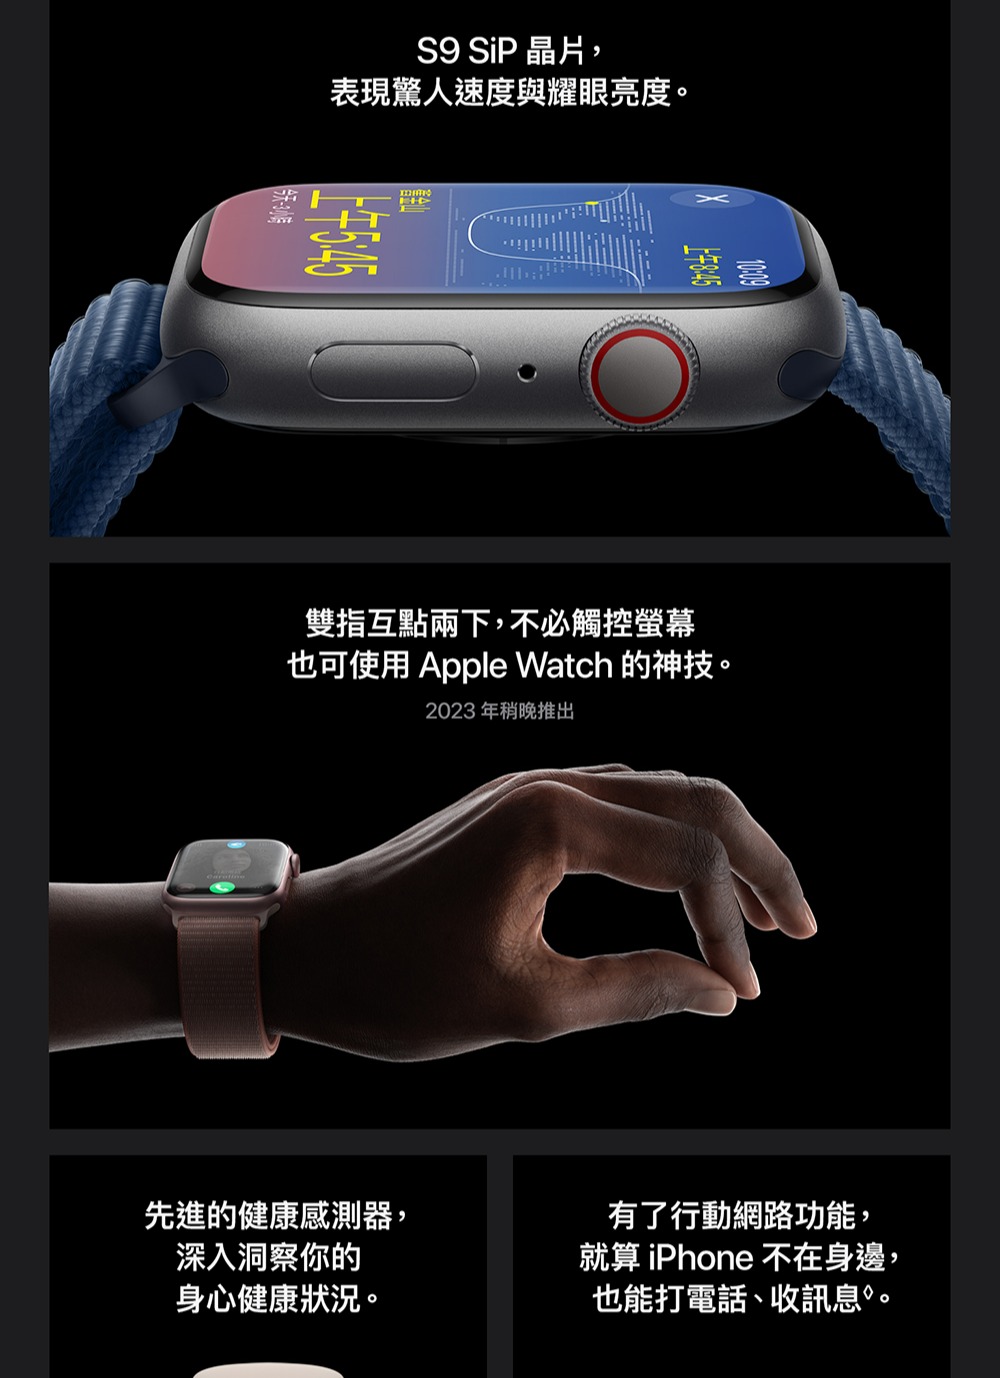 三合一無線充電座組 Apple 蘋果 Apple Watch